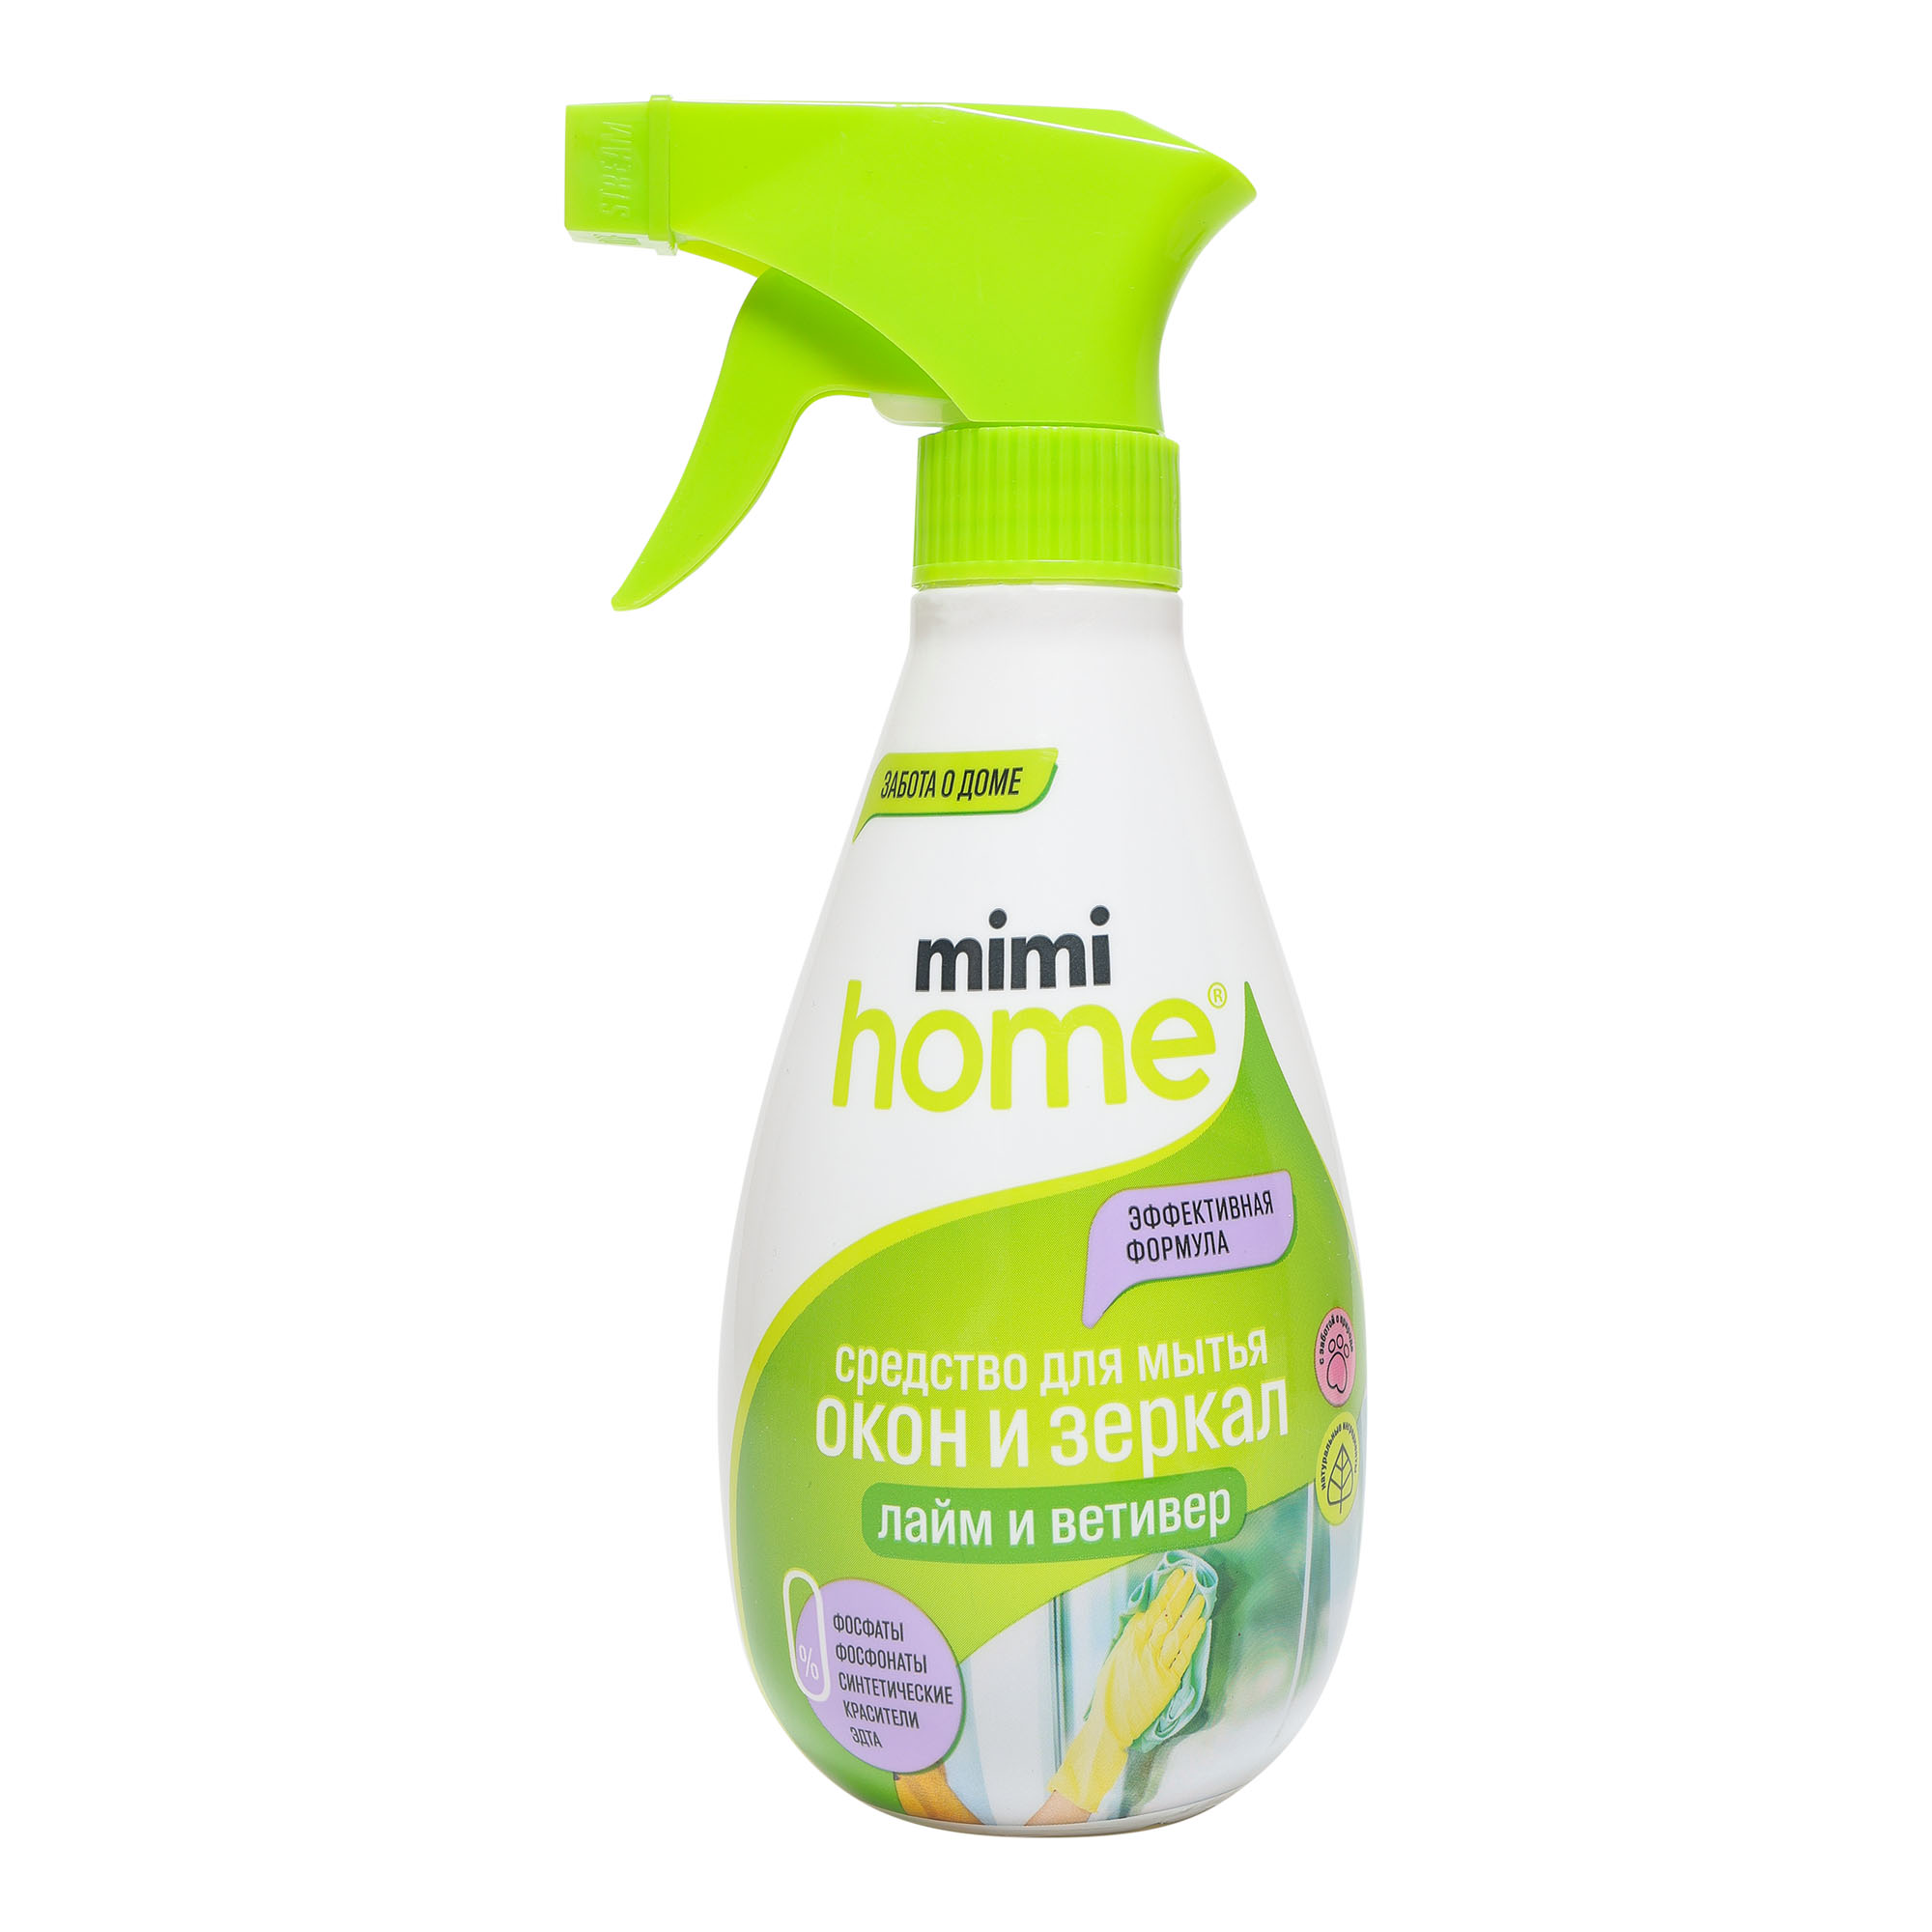 Средство для мытья окон и зеркал Mimi Home 370 мл средства для уборки mimi home средство для мытья окон и зеркал лайм и ветивер